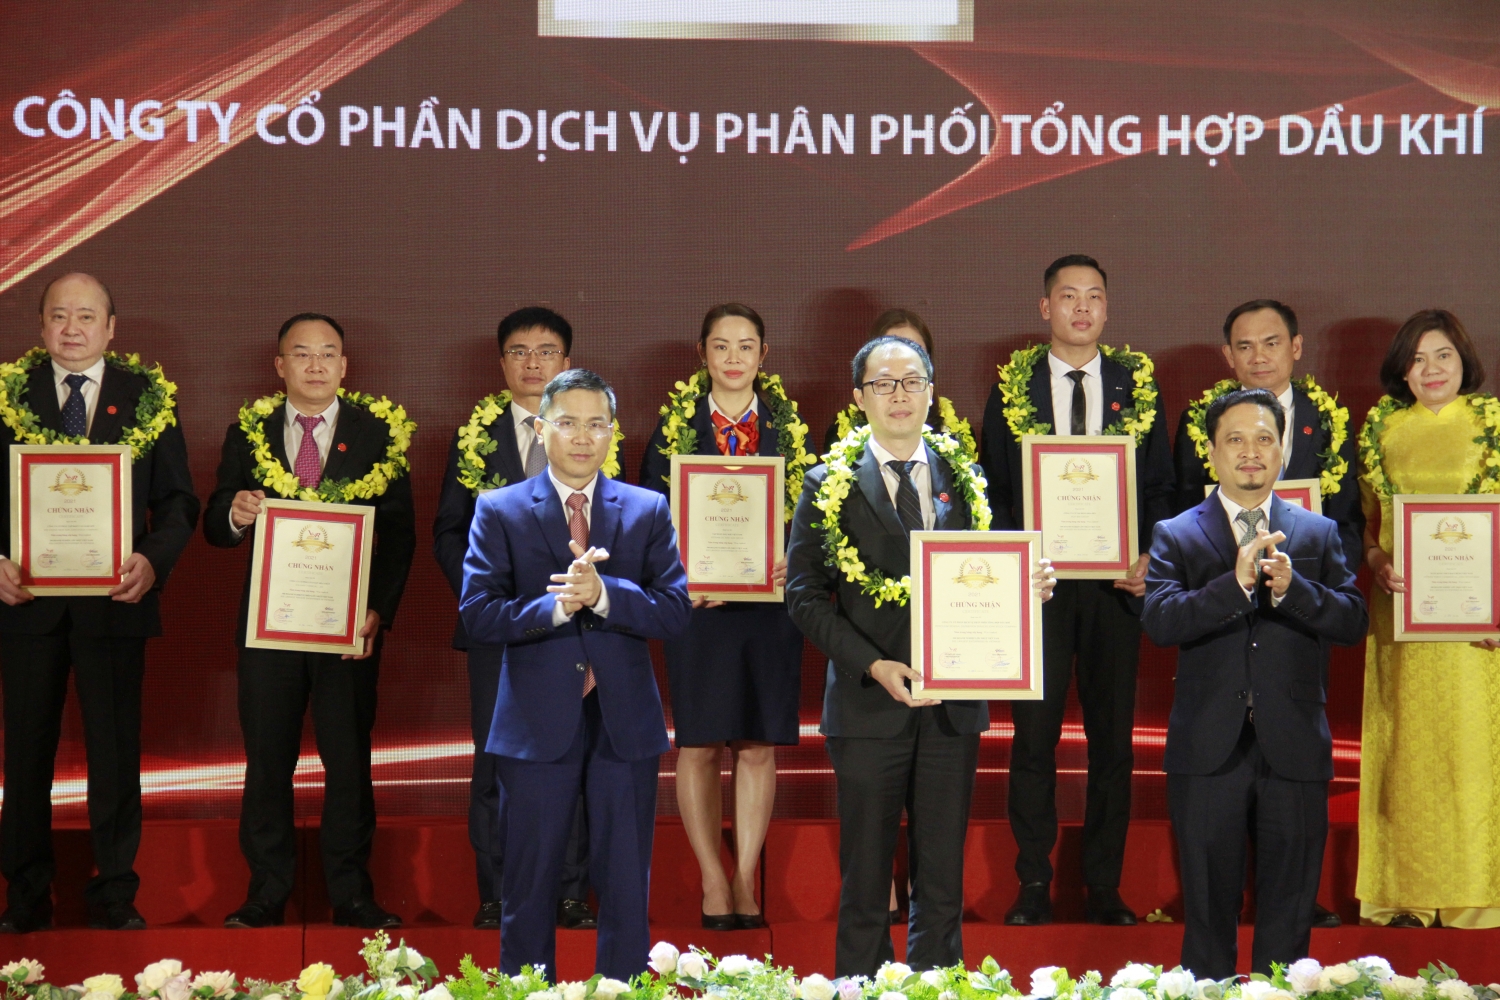 Petrovietnam cùng nhiều doanh nghiệp Dầu khí khẳng định vị thế trong Top 500 doanh nghiệp lớn nhất Việt Nam